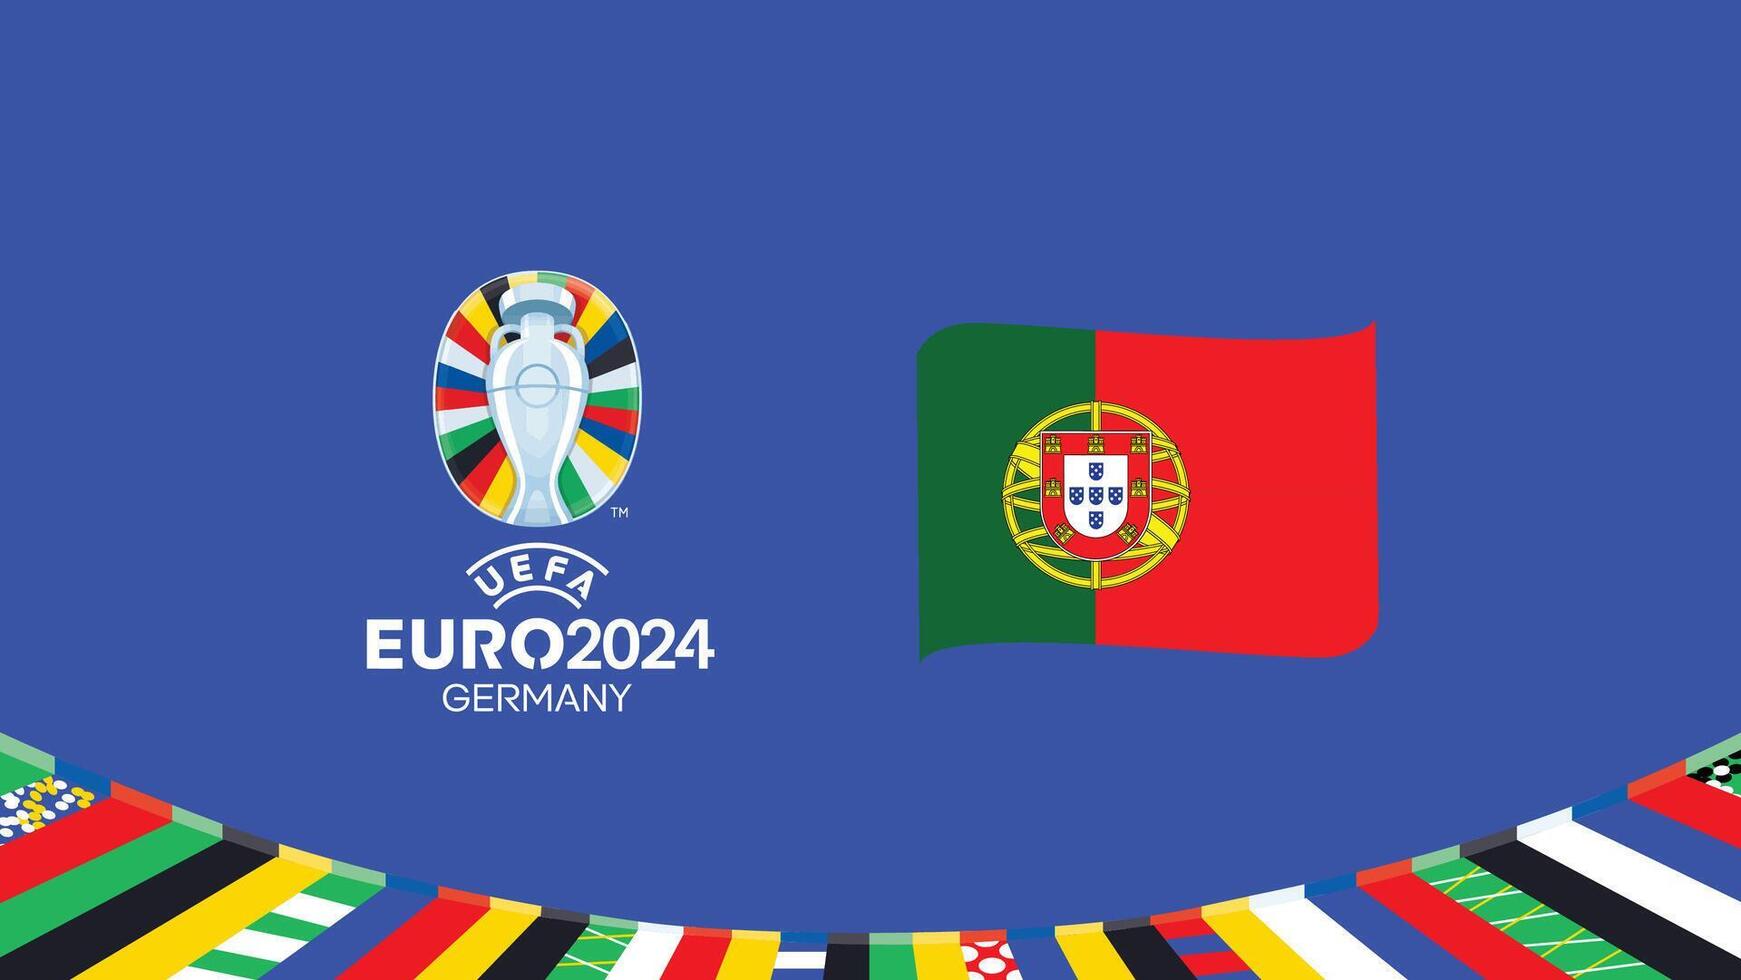 Euro 2024 Portogallo emblema nastro squadre design con ufficiale simbolo logo astratto paesi europeo calcio illustrazione vettore